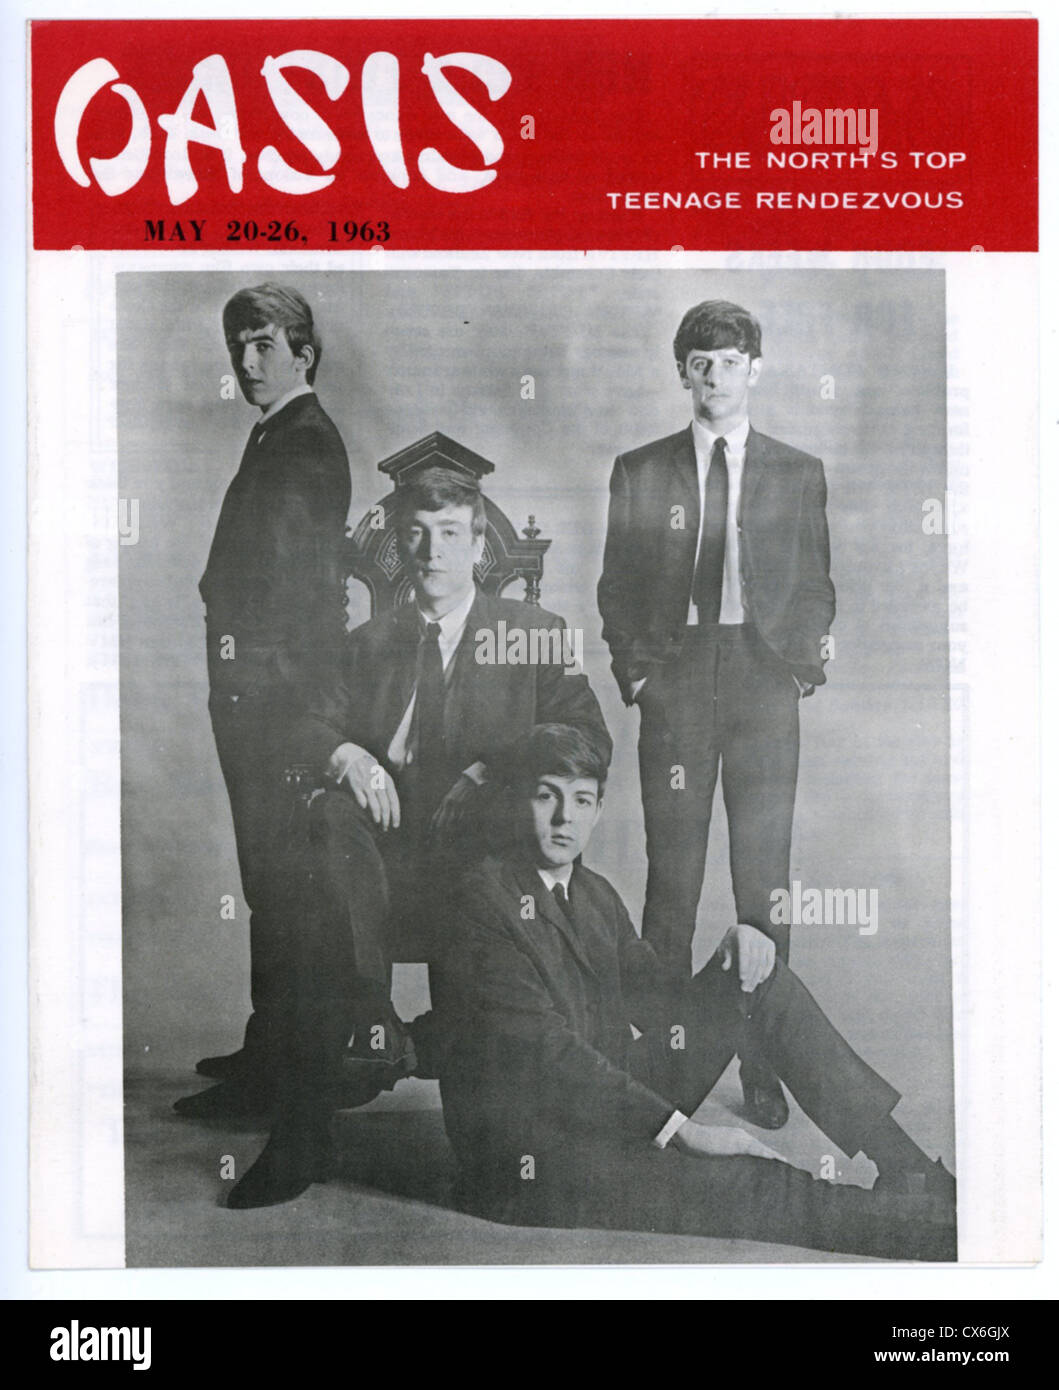 000637 - Oasis Club Magazine avec pochette des Beatles à partir de mai 1963 Banque D'Images